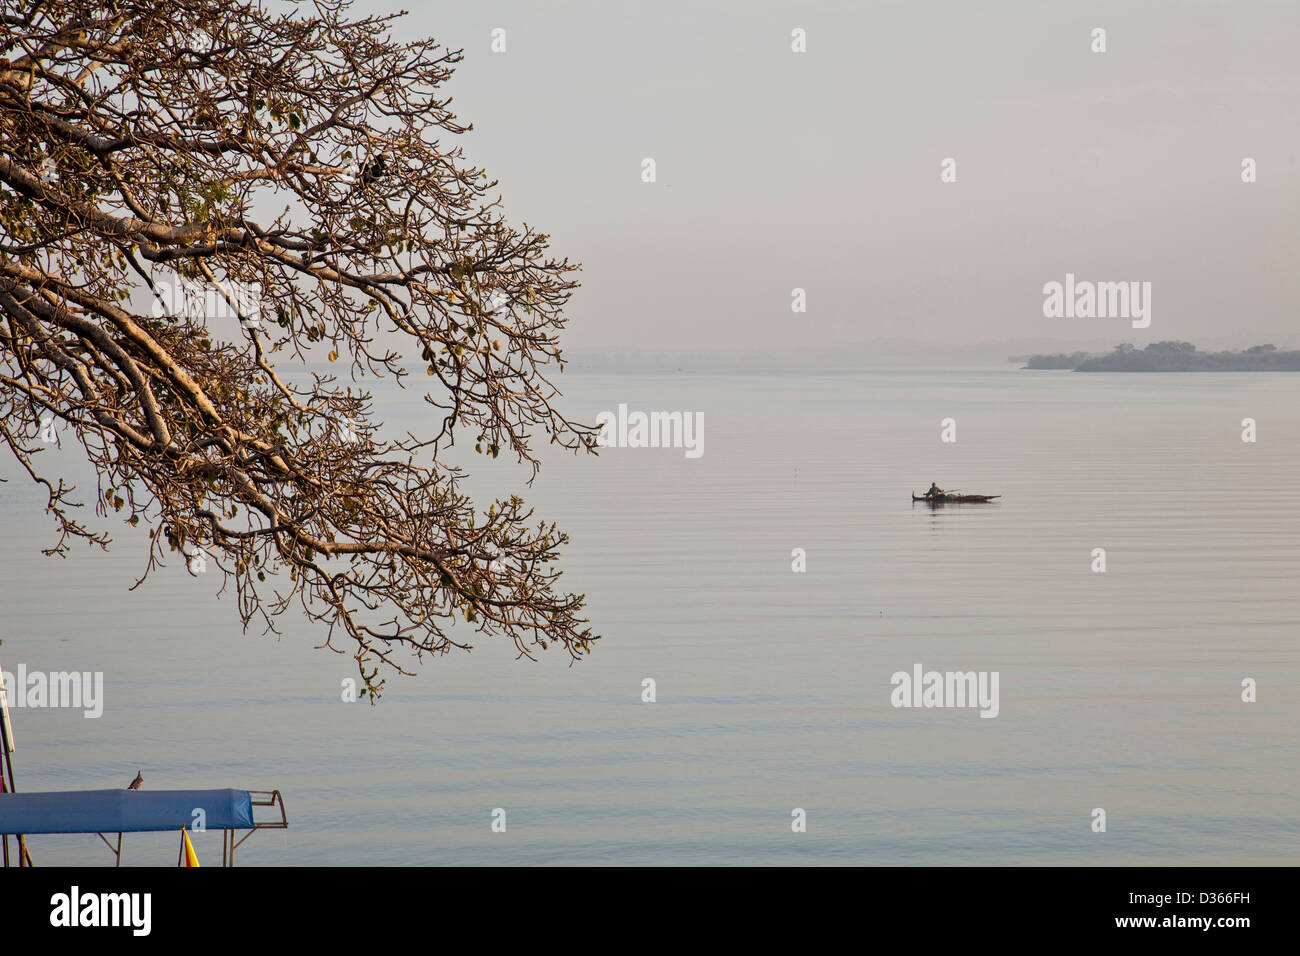 La mattina presto sul Lago Tana, Bahir Dar, Etiopia Foto Stock